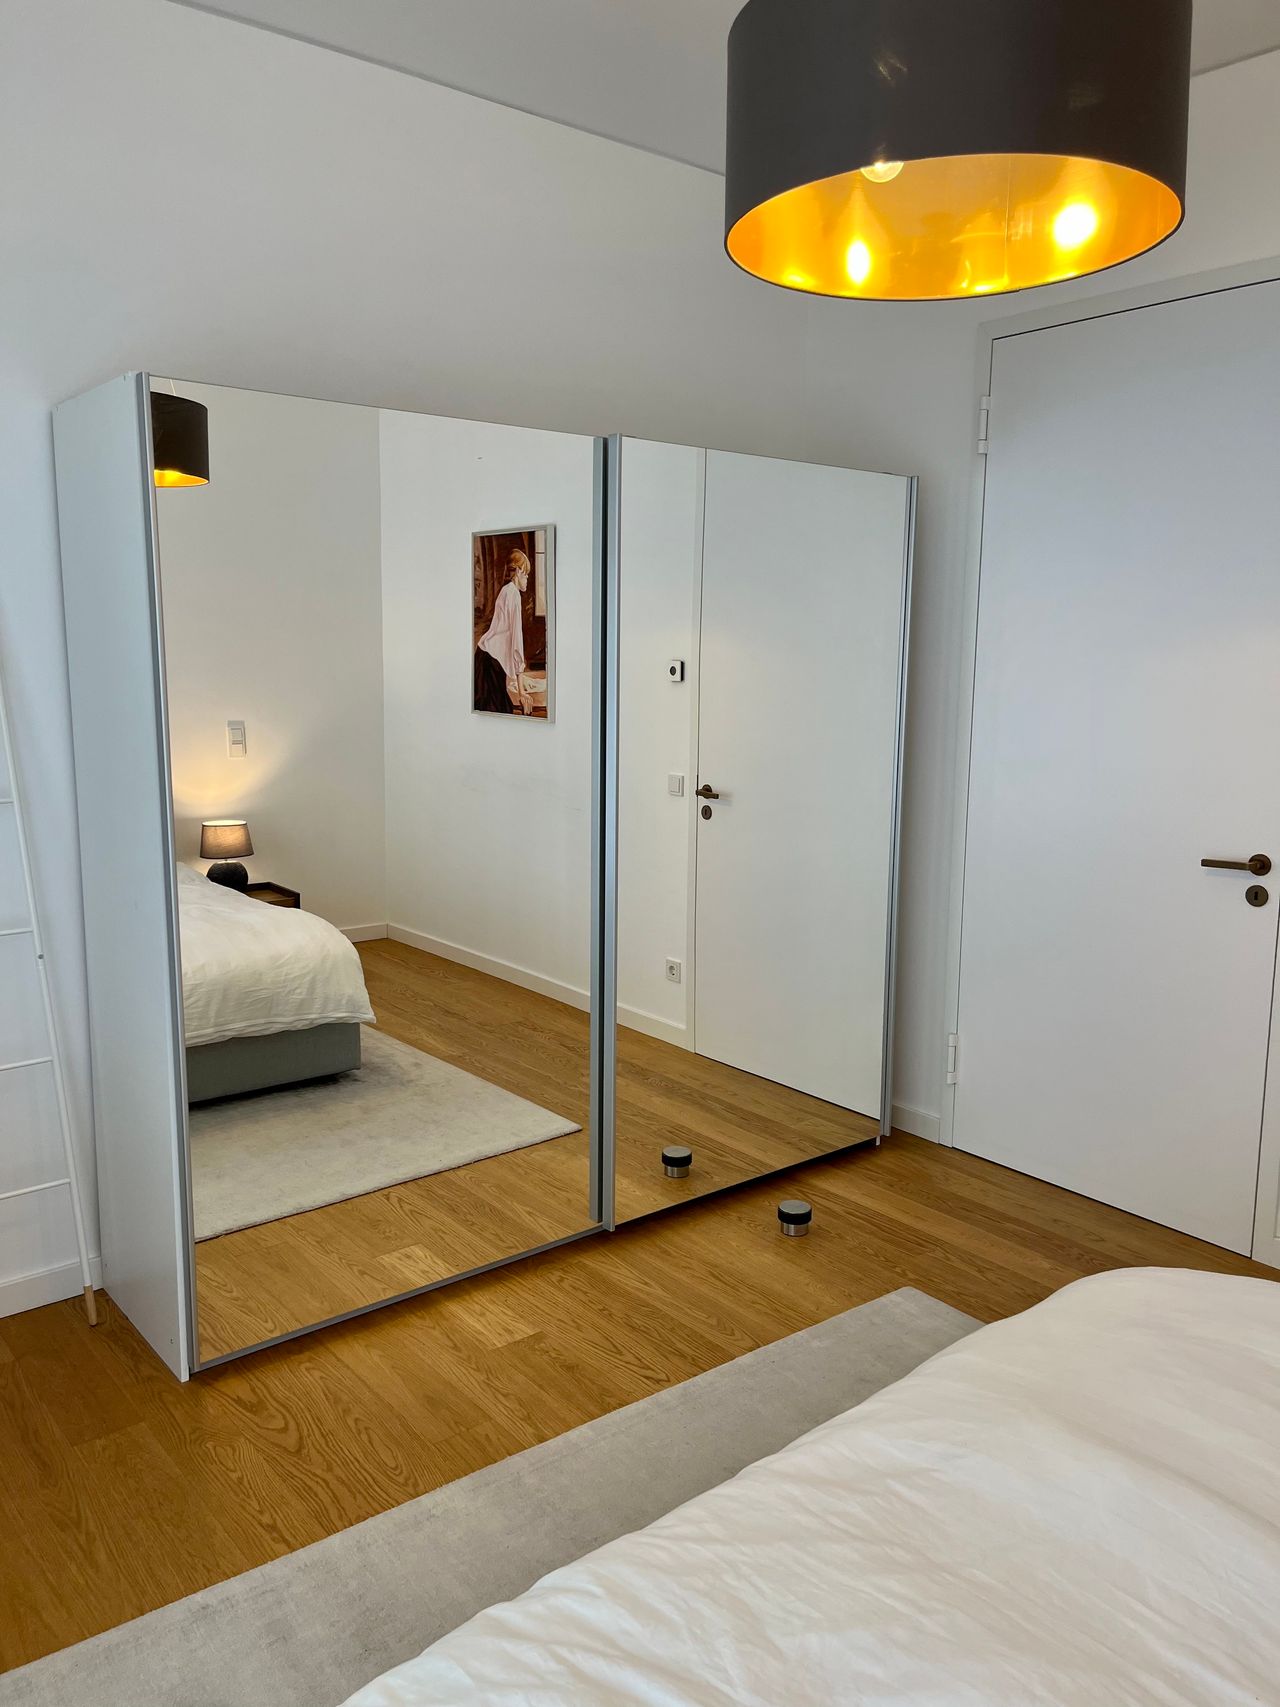 Luxury 1 bedroom apartment in best address of Berlin Mitte